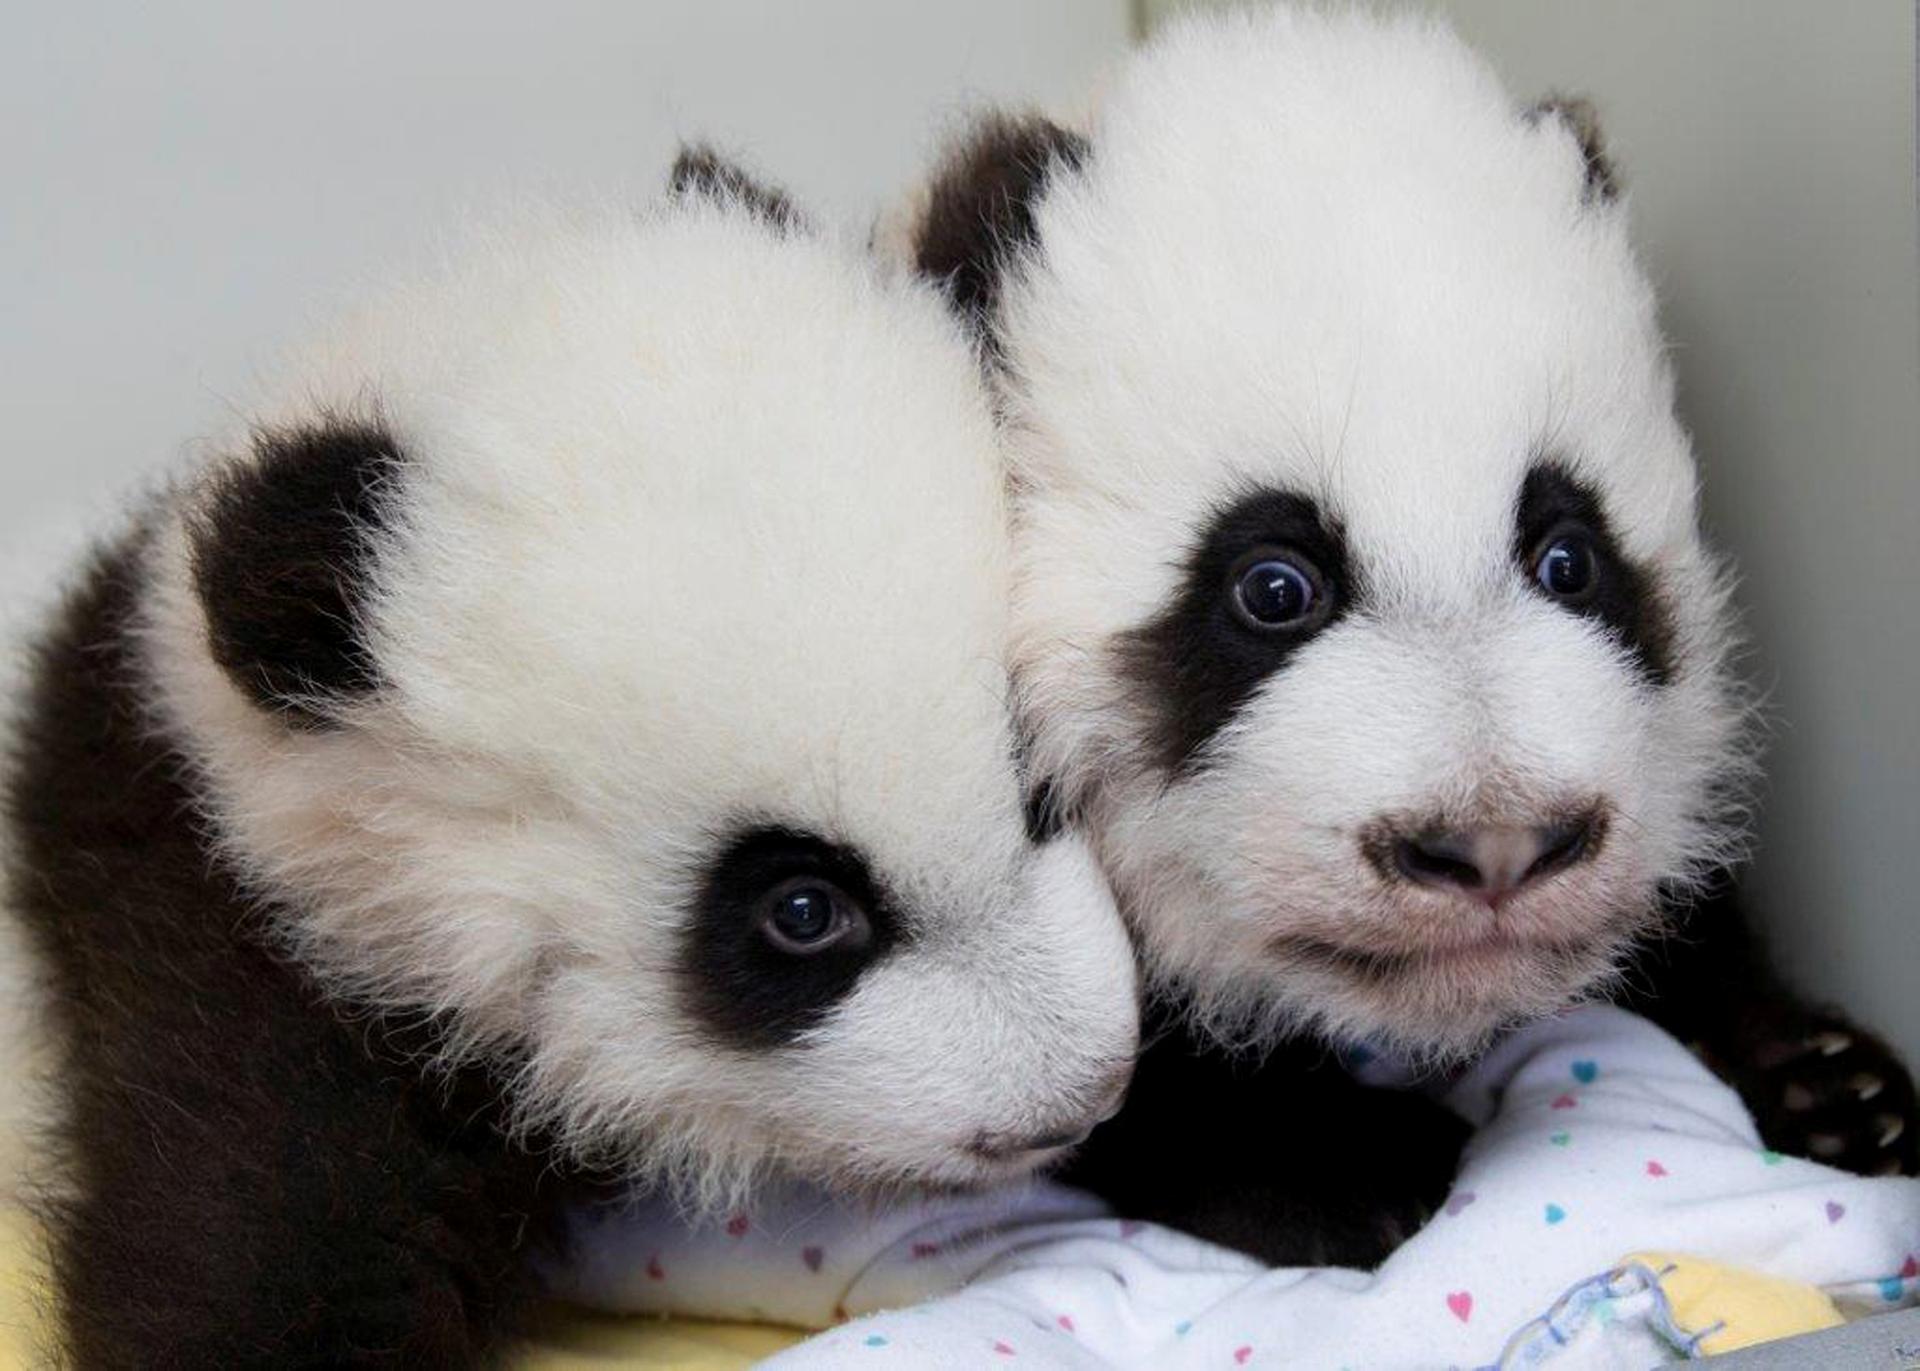 Here are giant panda twins Ya Lun and Xi Lun at the Atlanta zoo.